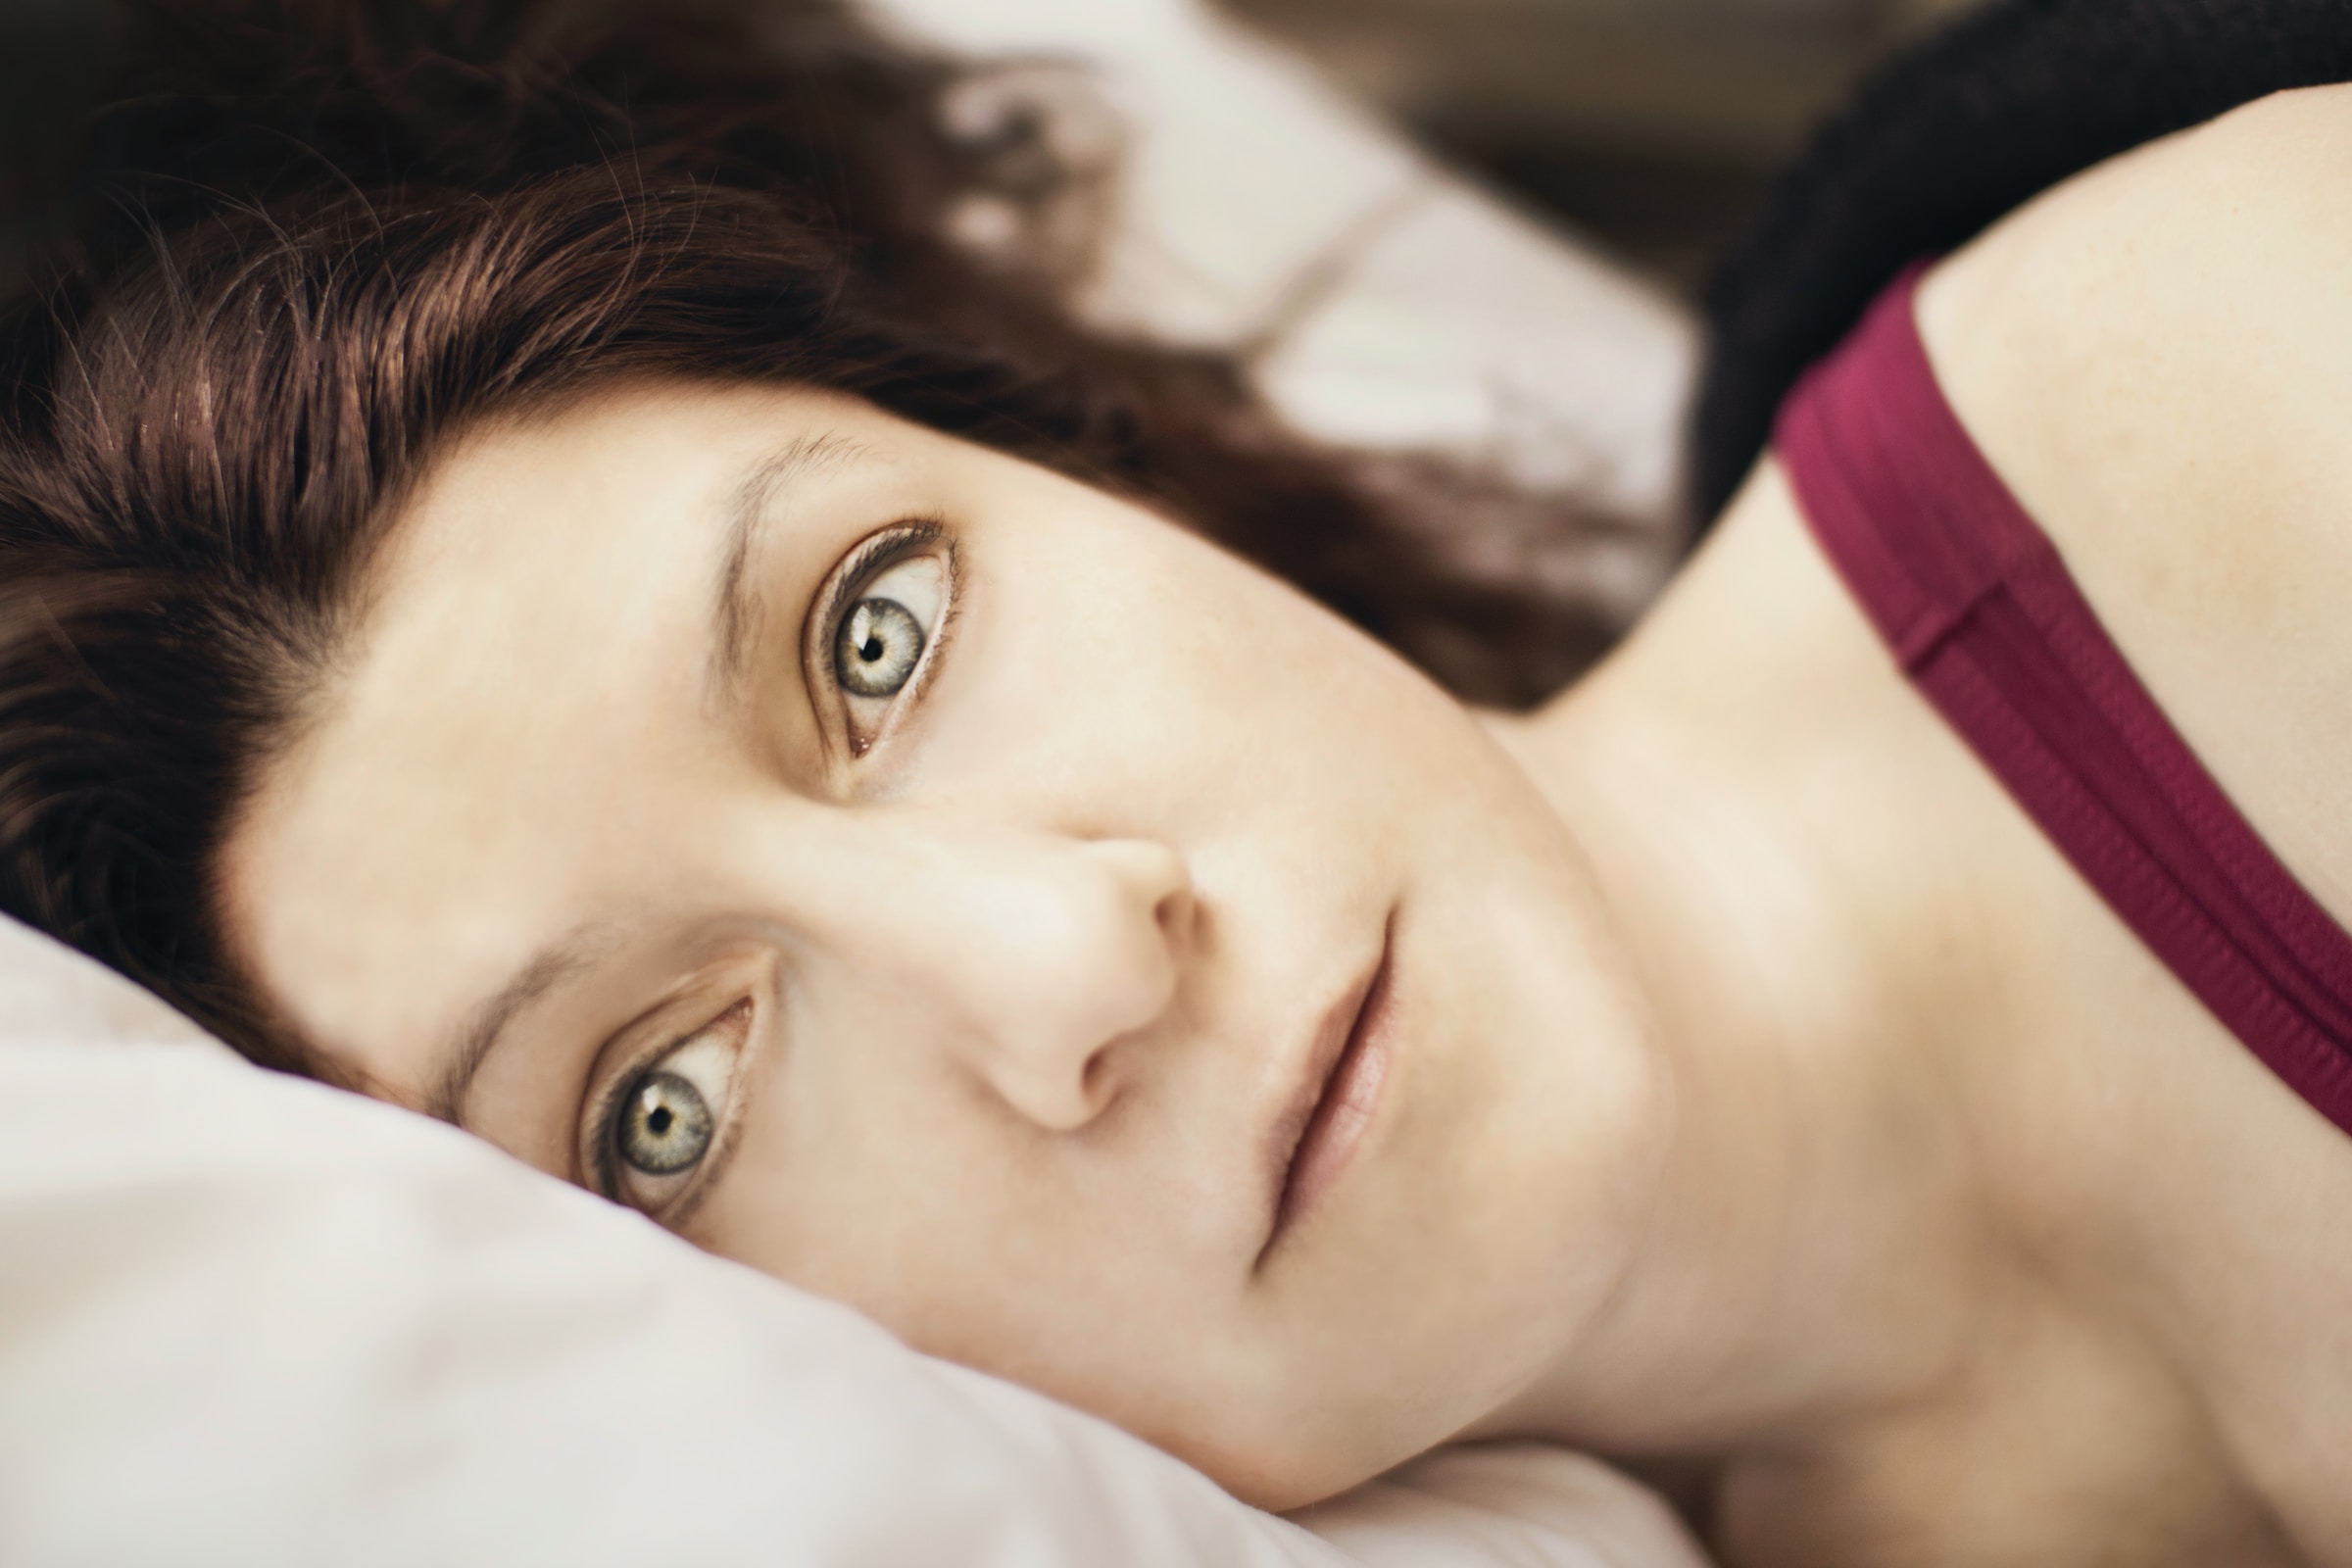 Une femme allongée dans son lit n'arrivant pas à trouver le sommeil | Source : Unsplash